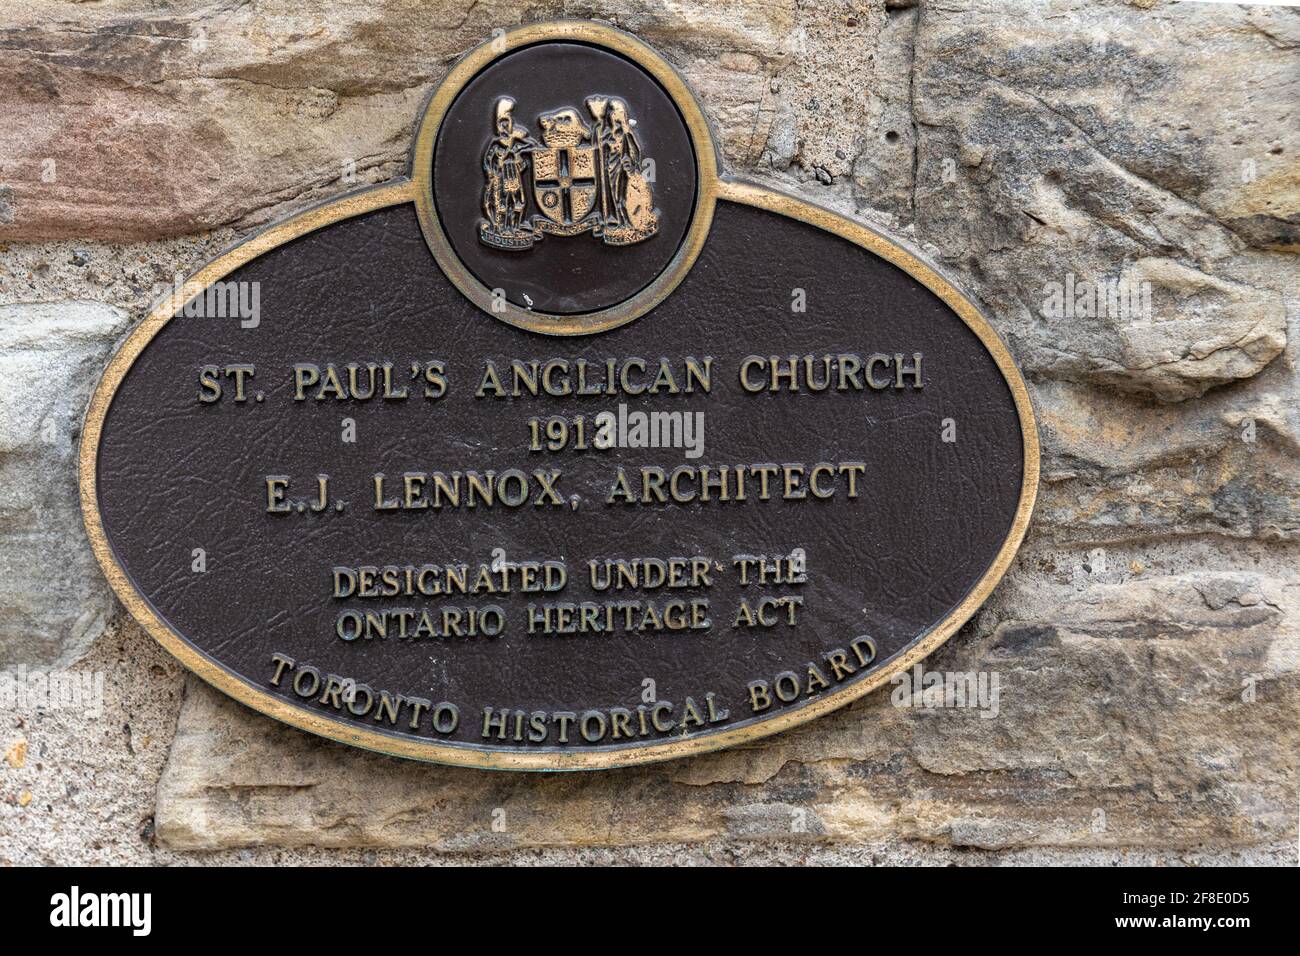 St. Paul's Anglican Church entworfen von E.J. Lennox. Architektonische Merkmale des berühmten Ortes und Touristenattraktion in Toronto, Kanada Stockfoto